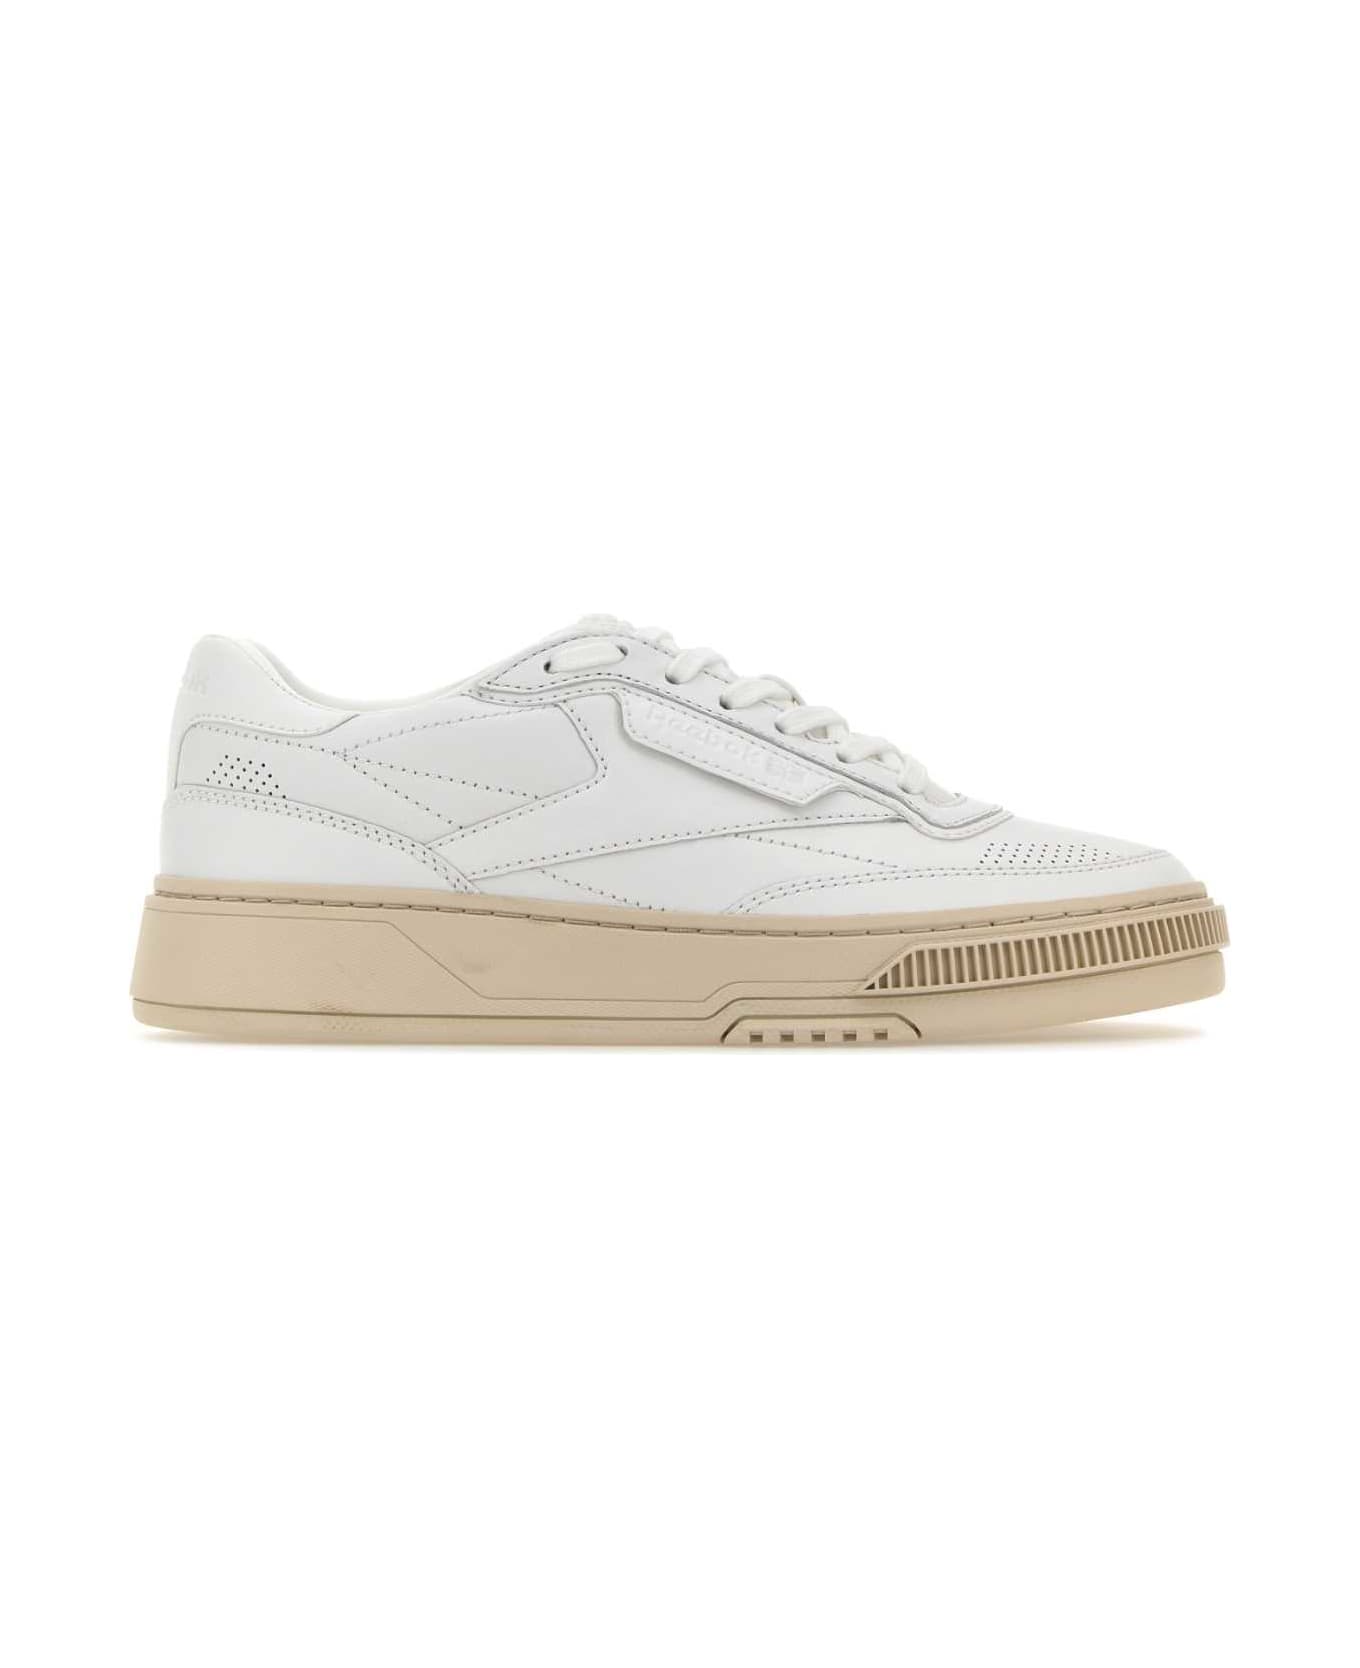 Reebok White Leather Club C Ltd Sneakers - White